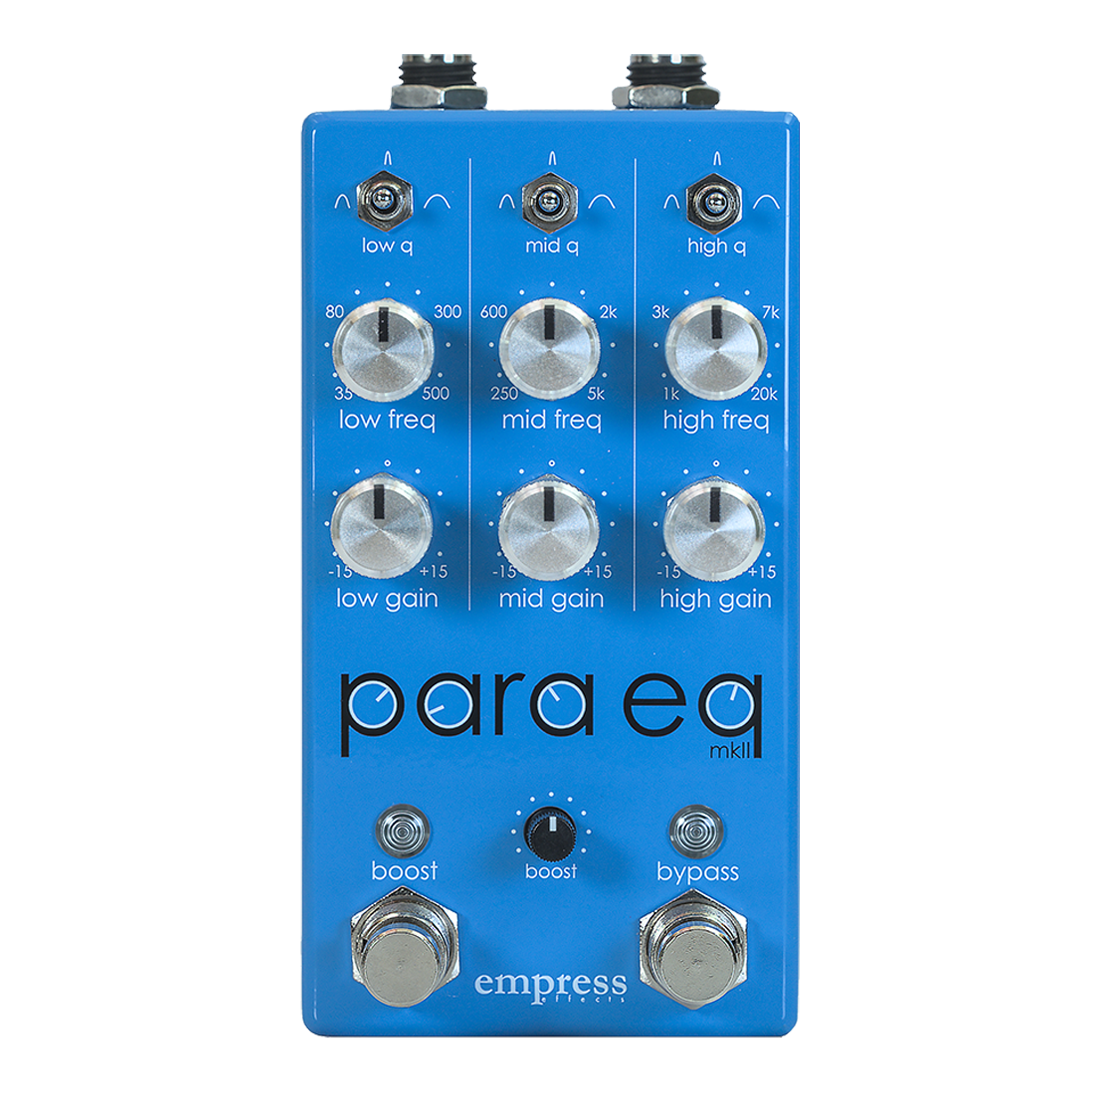 【empress effects】ParaEq